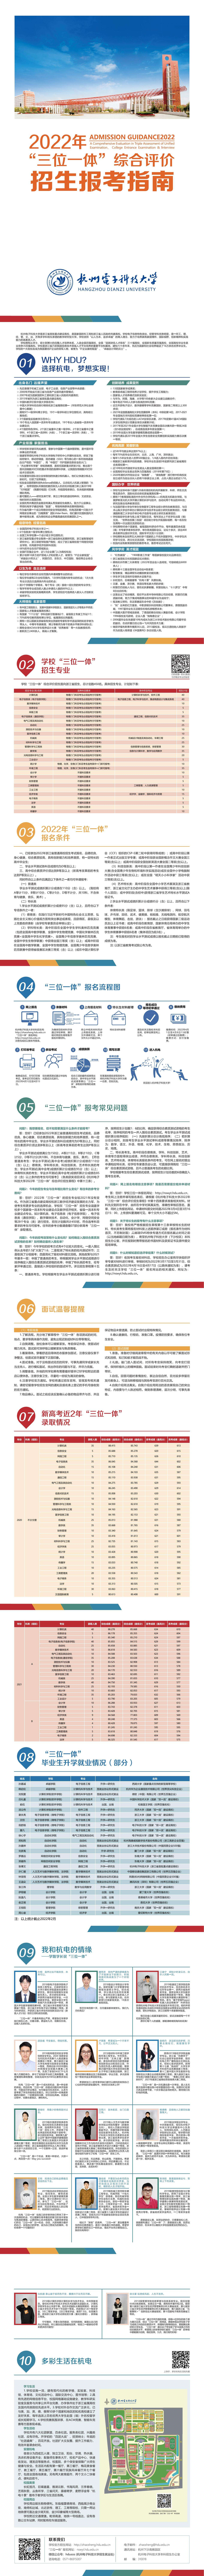 【三位一体报考指南】2022年杭州电子科技大学“三位一体”综合评价招生报考指南